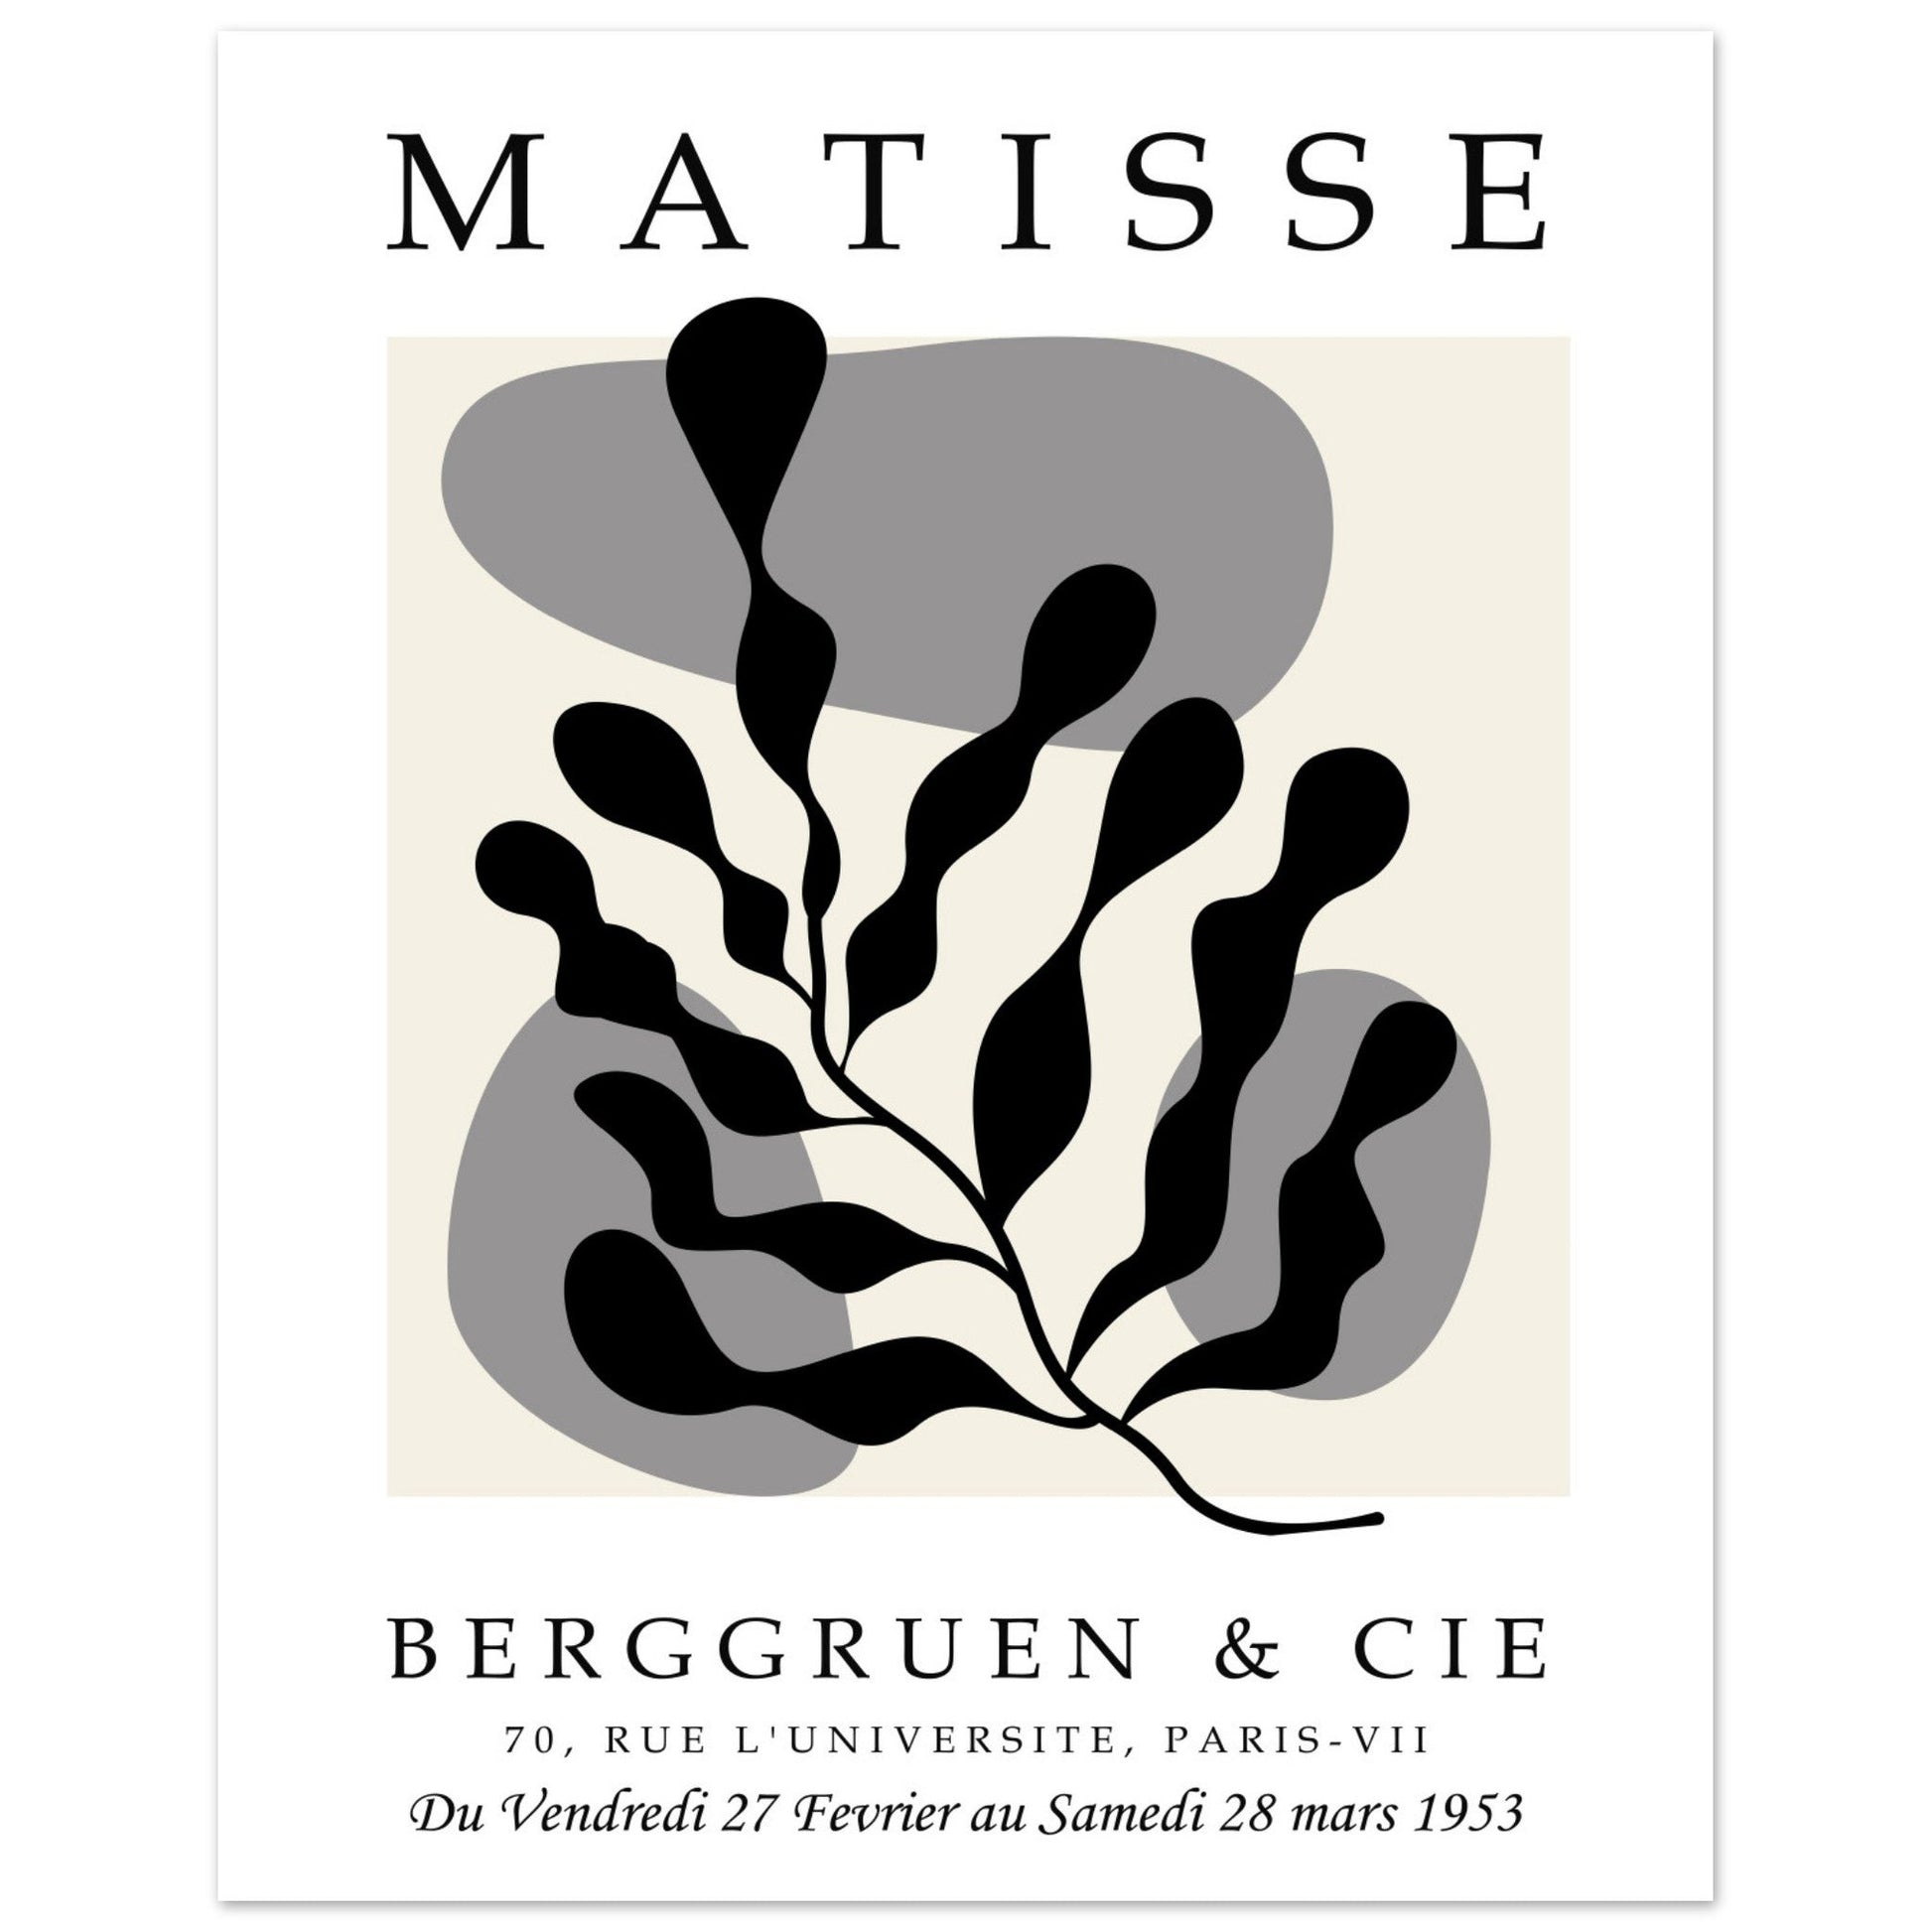 Matisse Cut Out, Henri Matisse Art Print, Matisse Poster, Matisse Wall Art, #illieeart